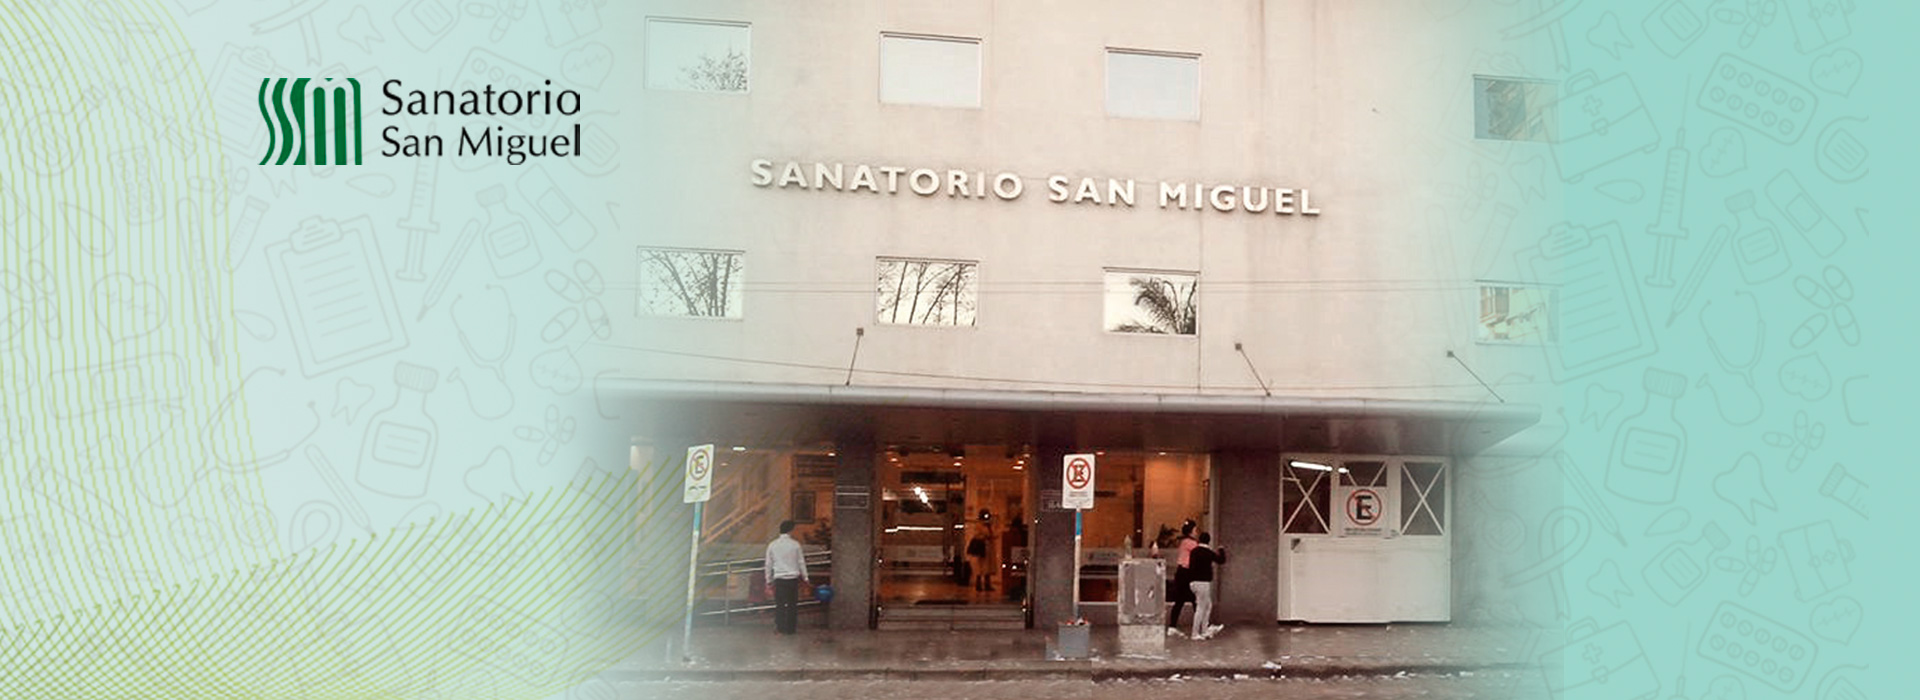 centros_sanmiguel_top